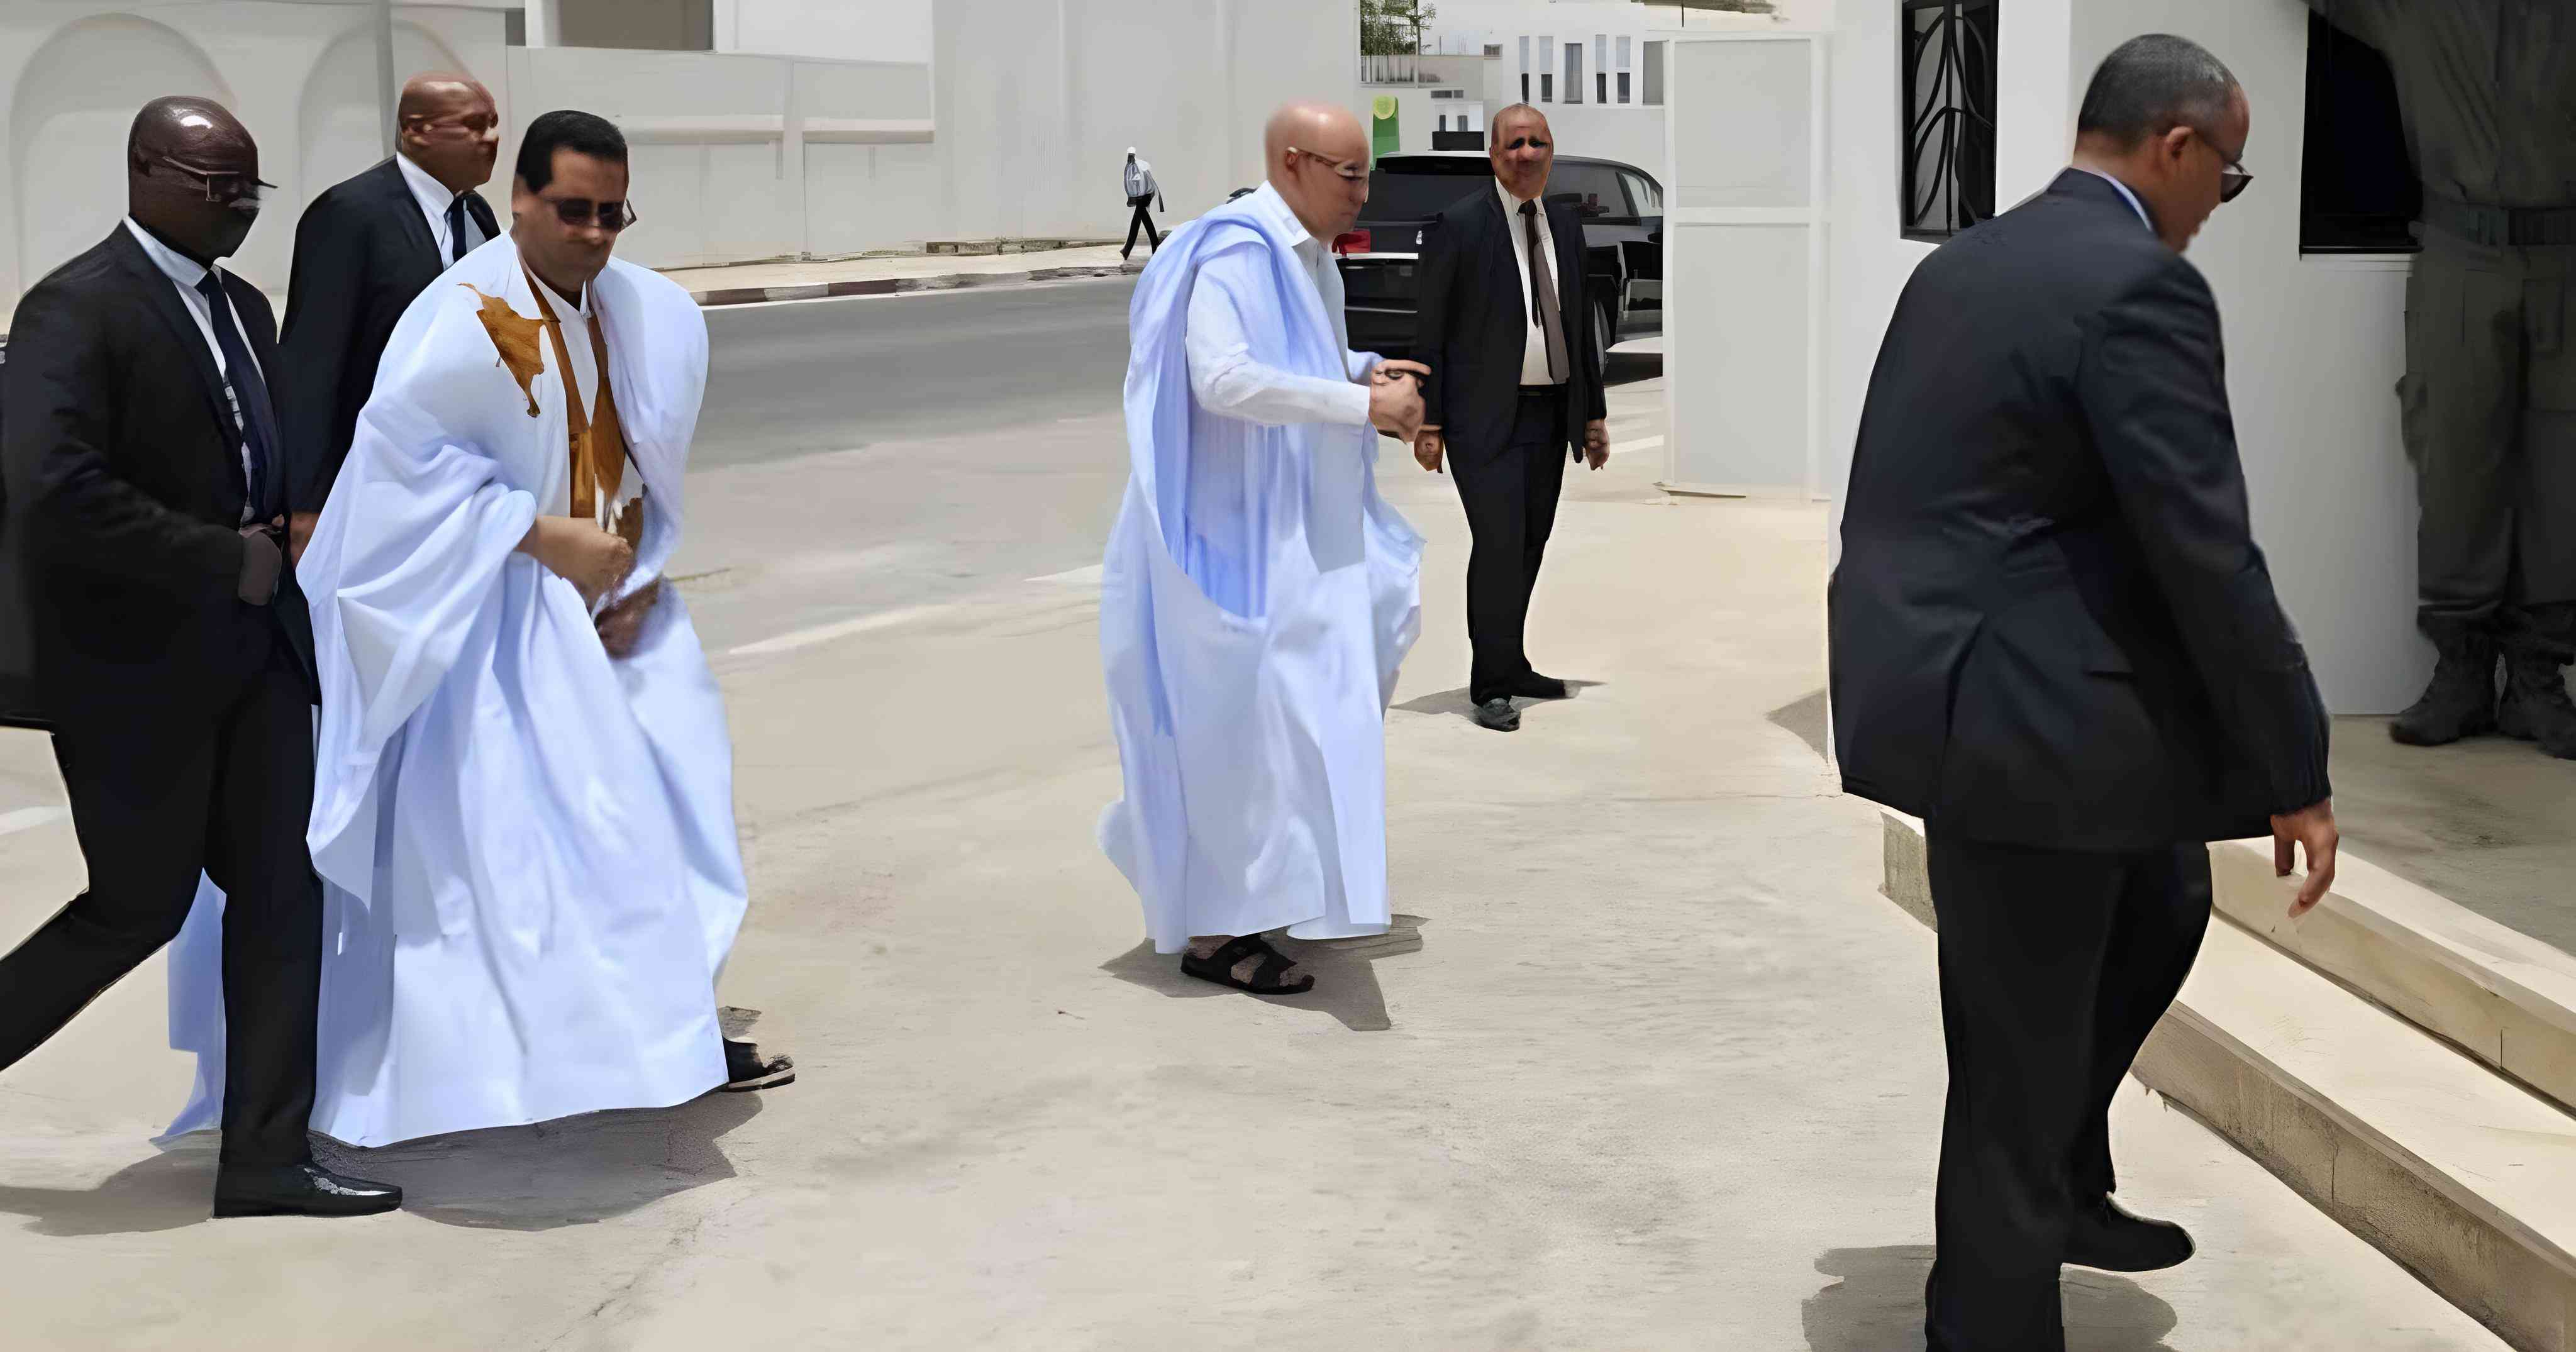   الرئيس الموريتاني يقدم ملف ترشحه الى المجلس الدستوري لمأمورية ثانية